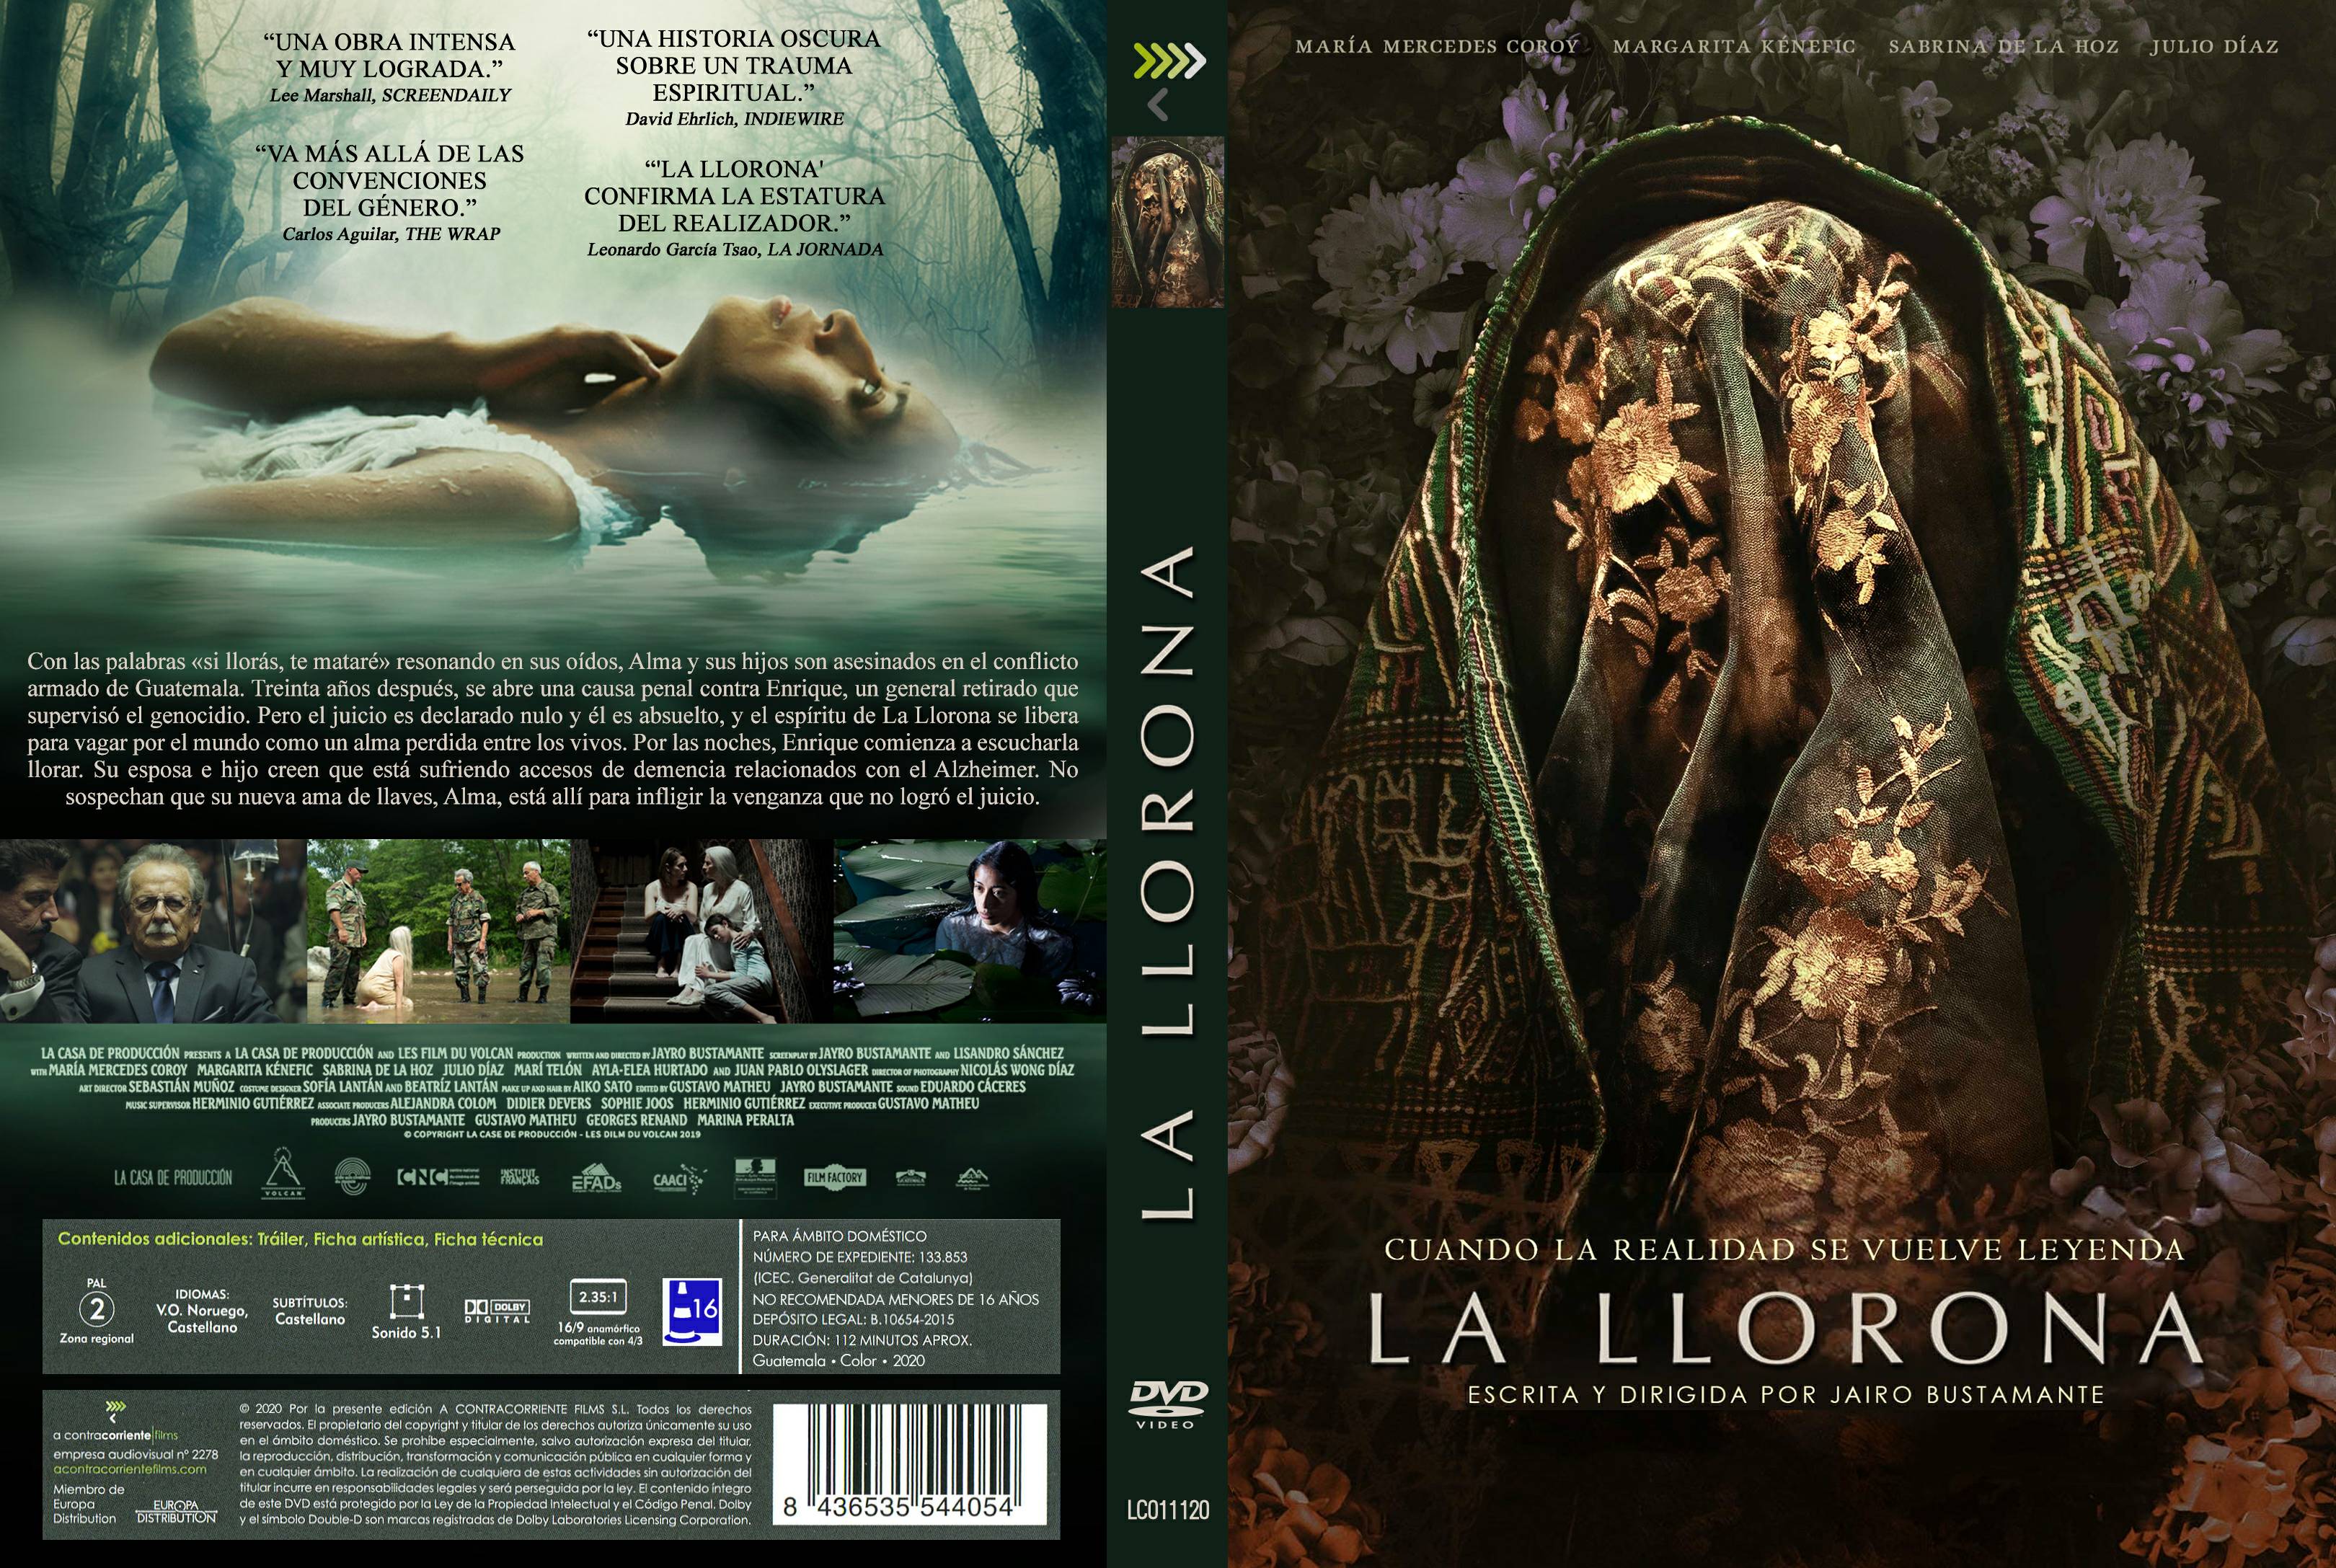 Who Is La Llorona